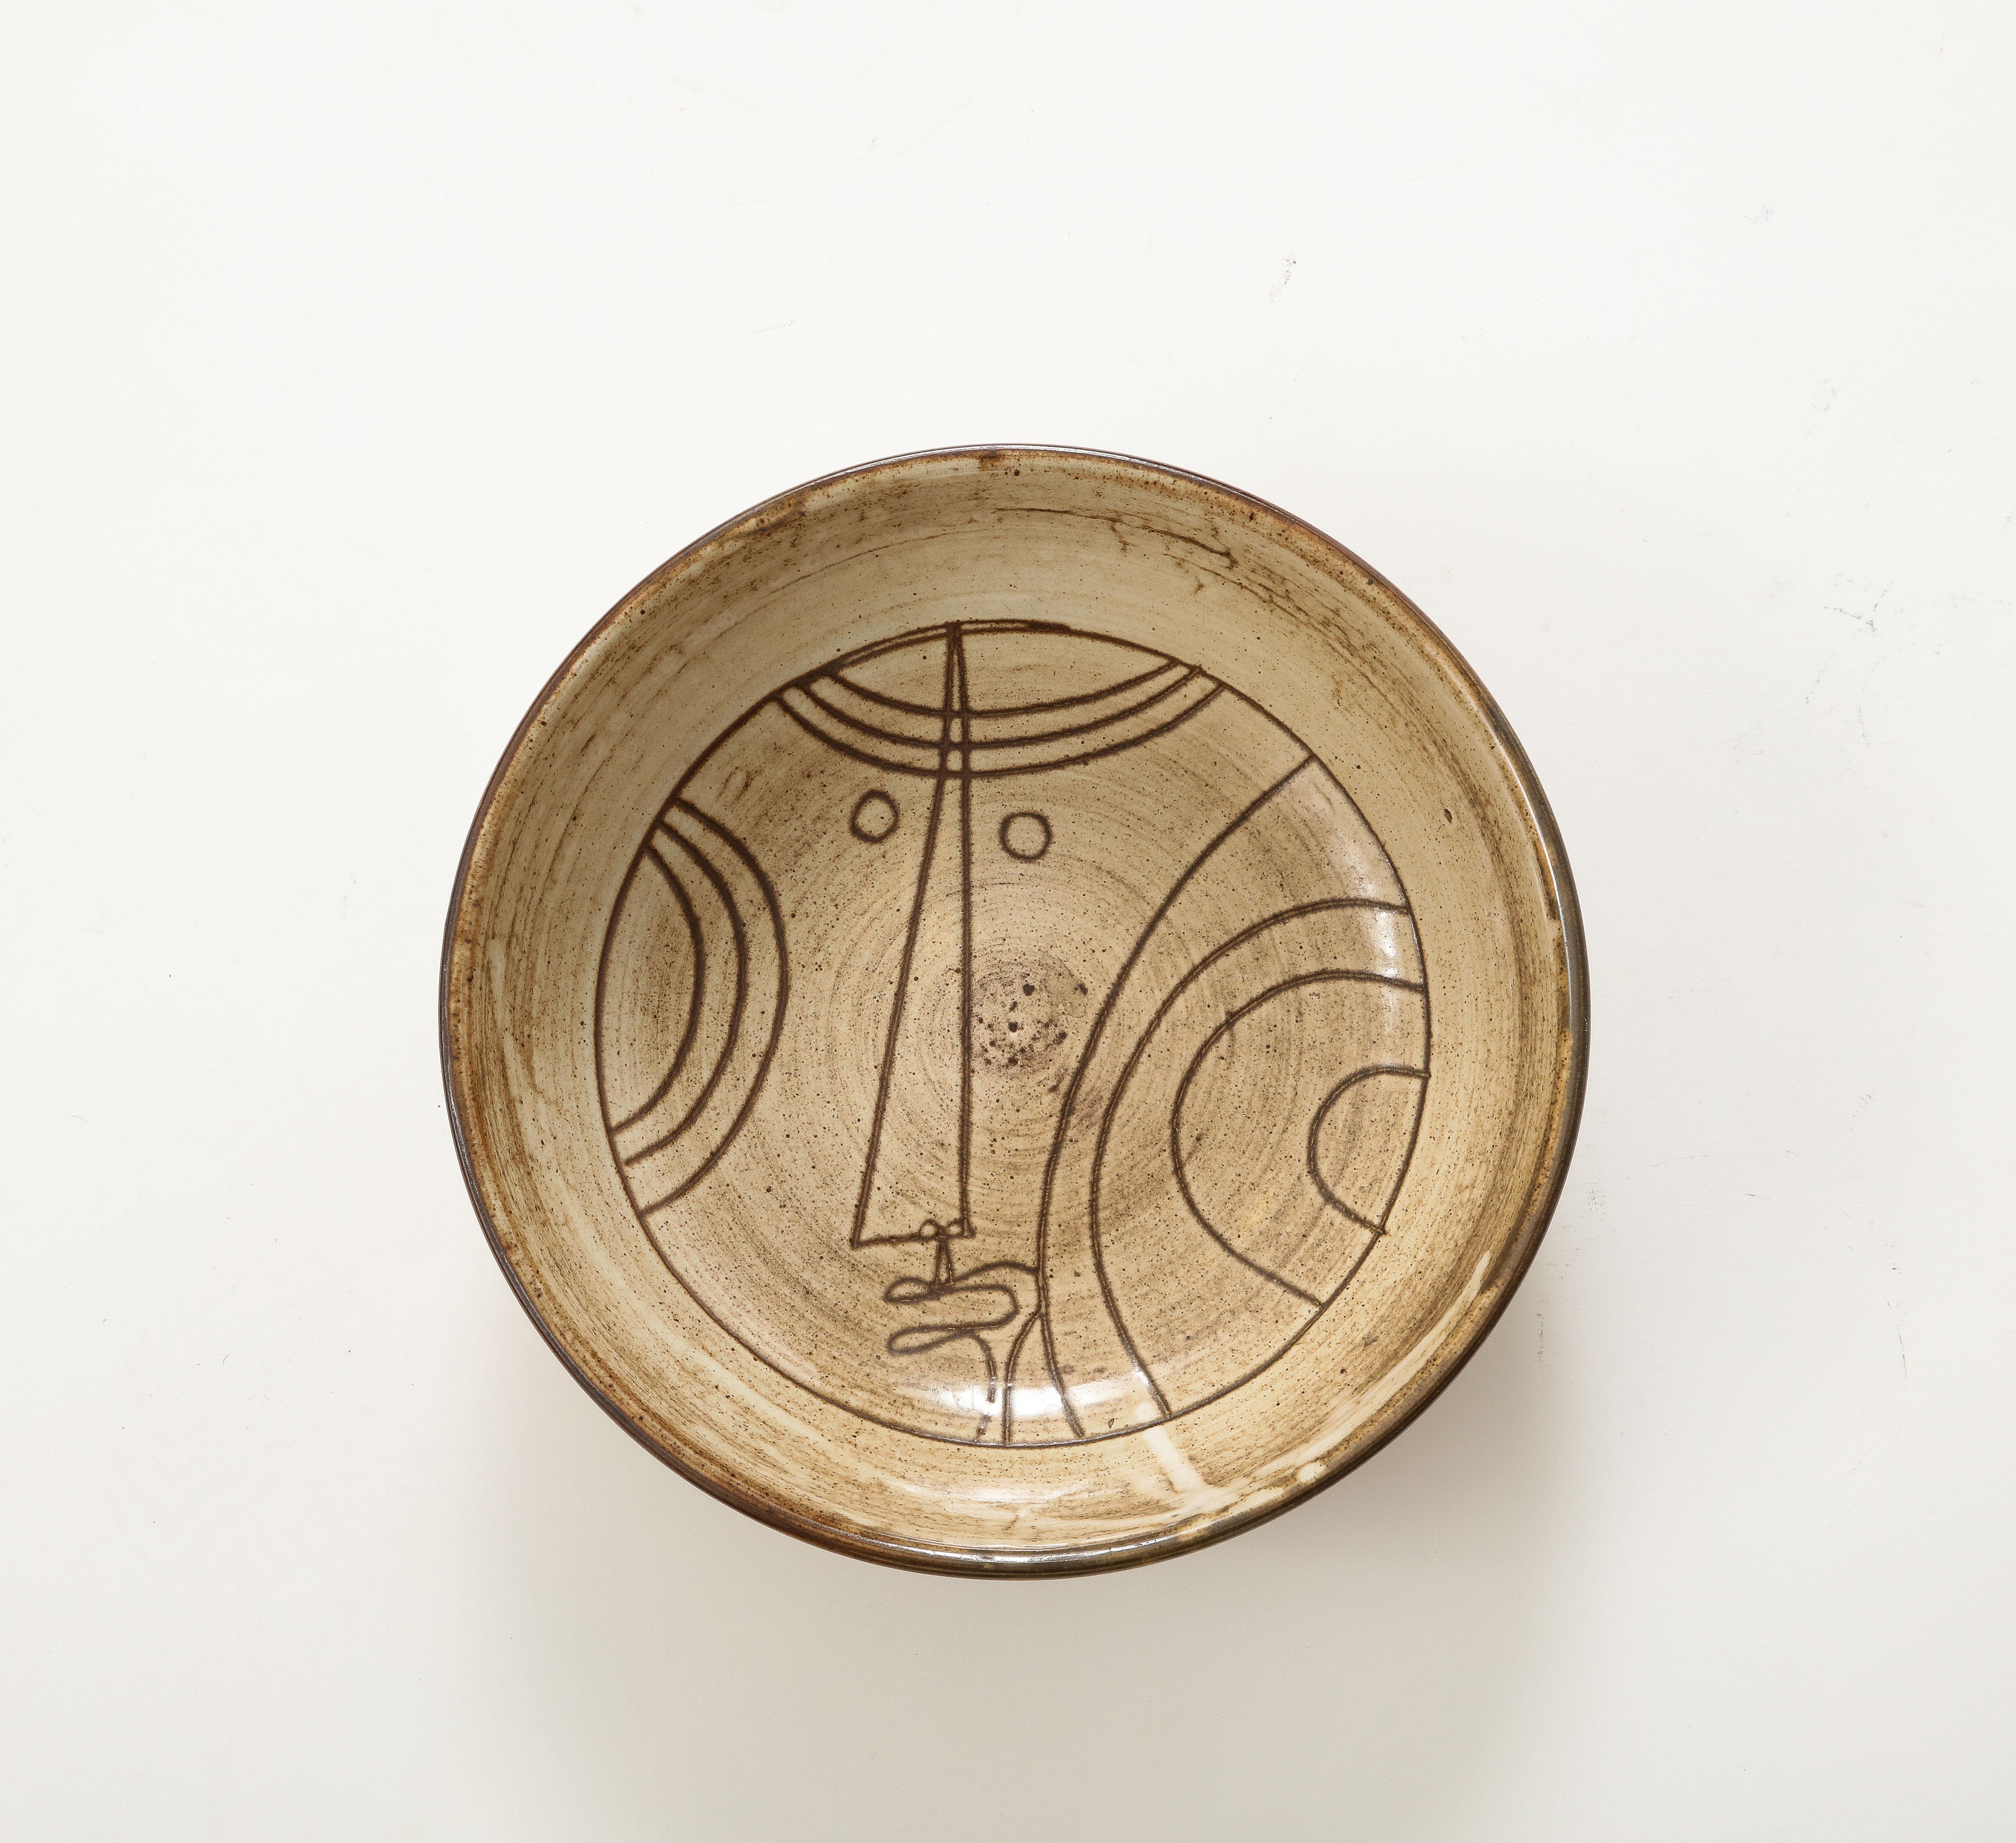 Jacques Pouchain, b. France (1925-2015), [son of Dominique]
Atelier Dieulefit, 1960, signed: 'Pouchain'
Ceramic Bowl

H: 3.25 Diam. 10.5 in.